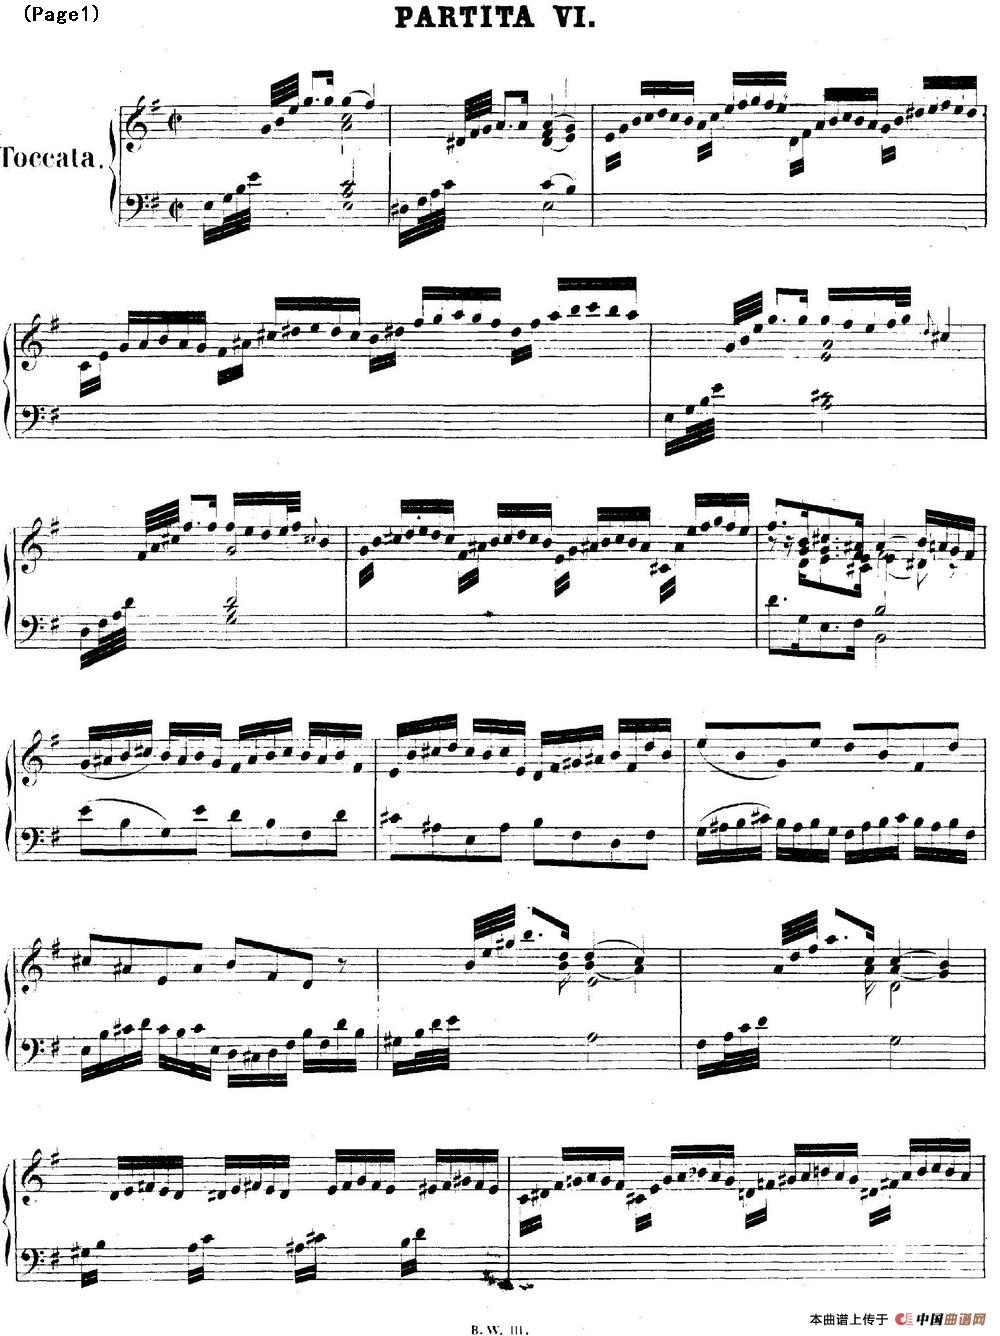 帕蒂塔6首德国组曲（No.6 e小调 巴赫 Partita e Minor BWV 830）(1)_BWV0830_页面_01.jpg